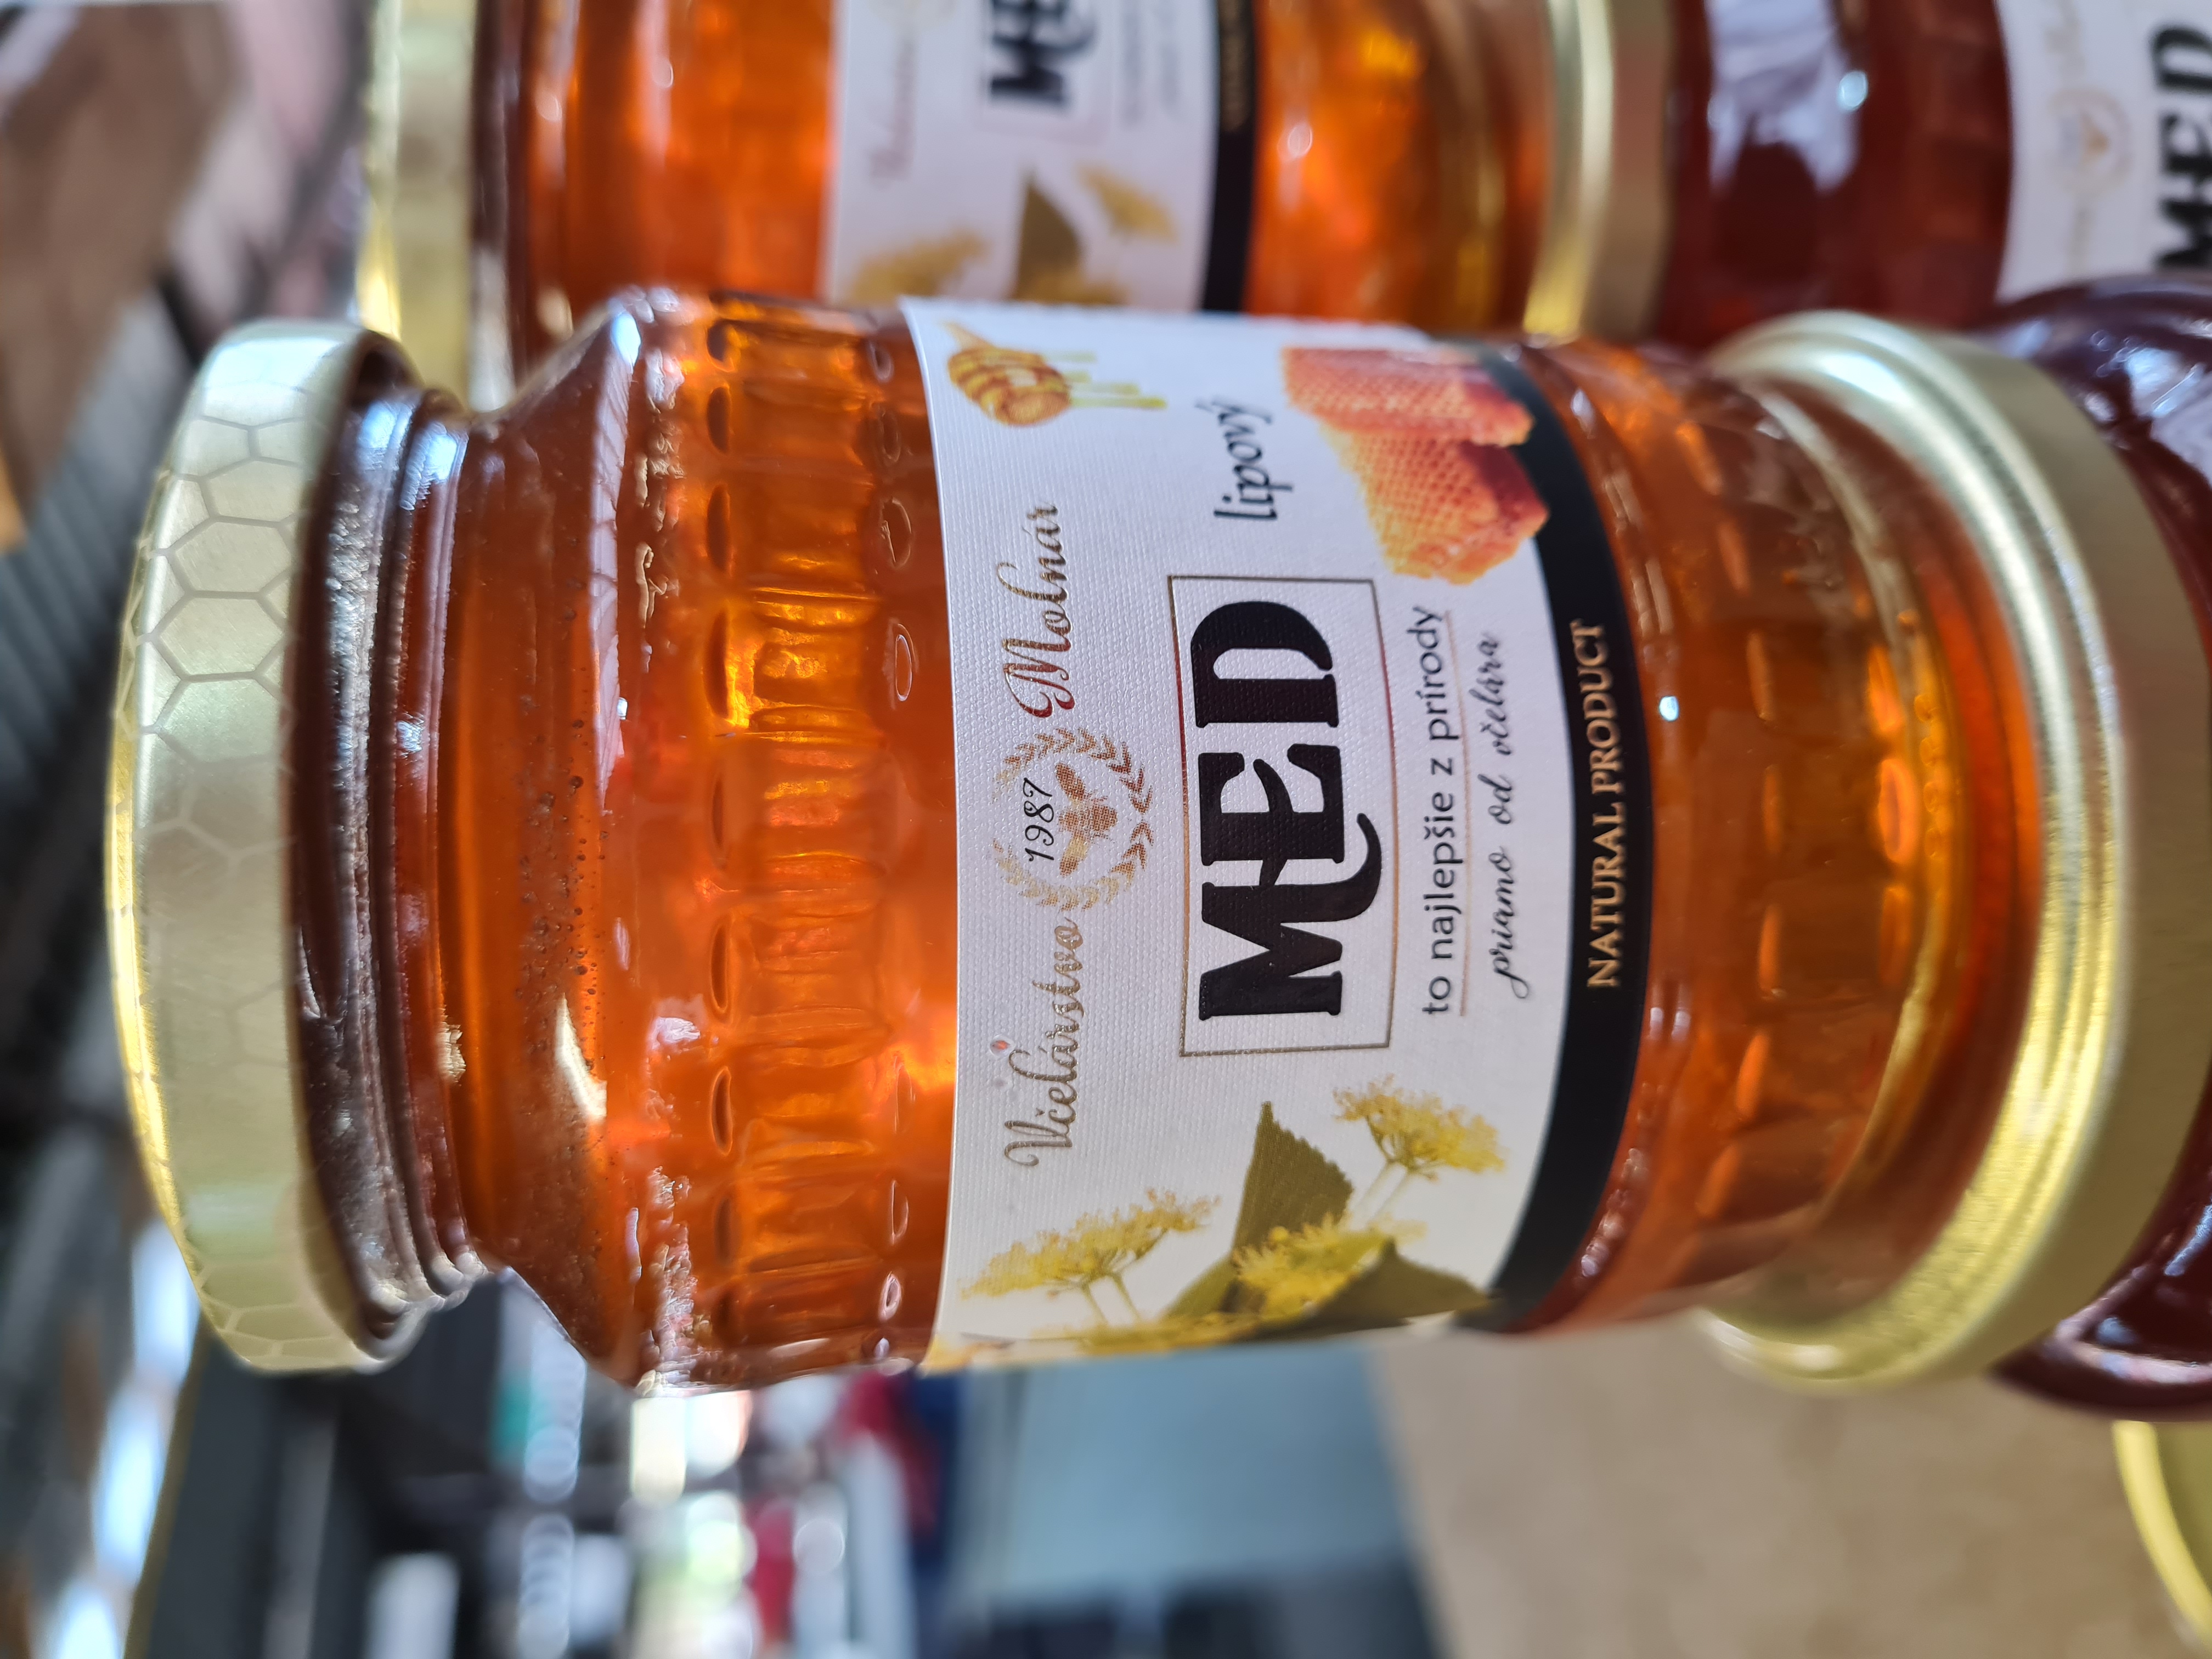 Posilnite imunitu domácim medom alebo propolisom. Na trhovisku Miletičova ich kúpite za výhodné ceny